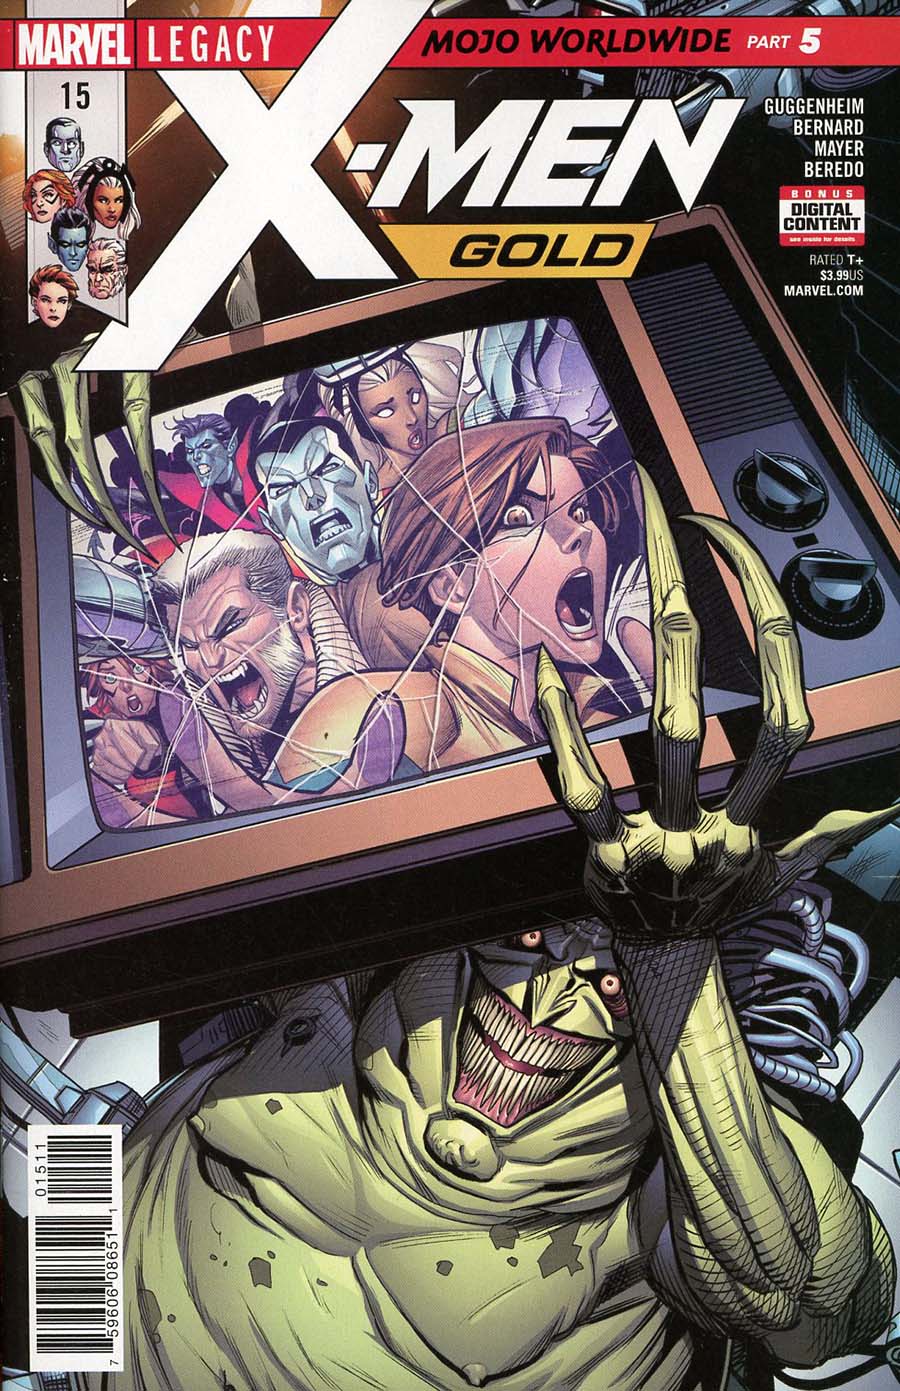 X-Men Gold #15 (Mojo Worldwide Part 5)(Marvel Legacy Tie-In)